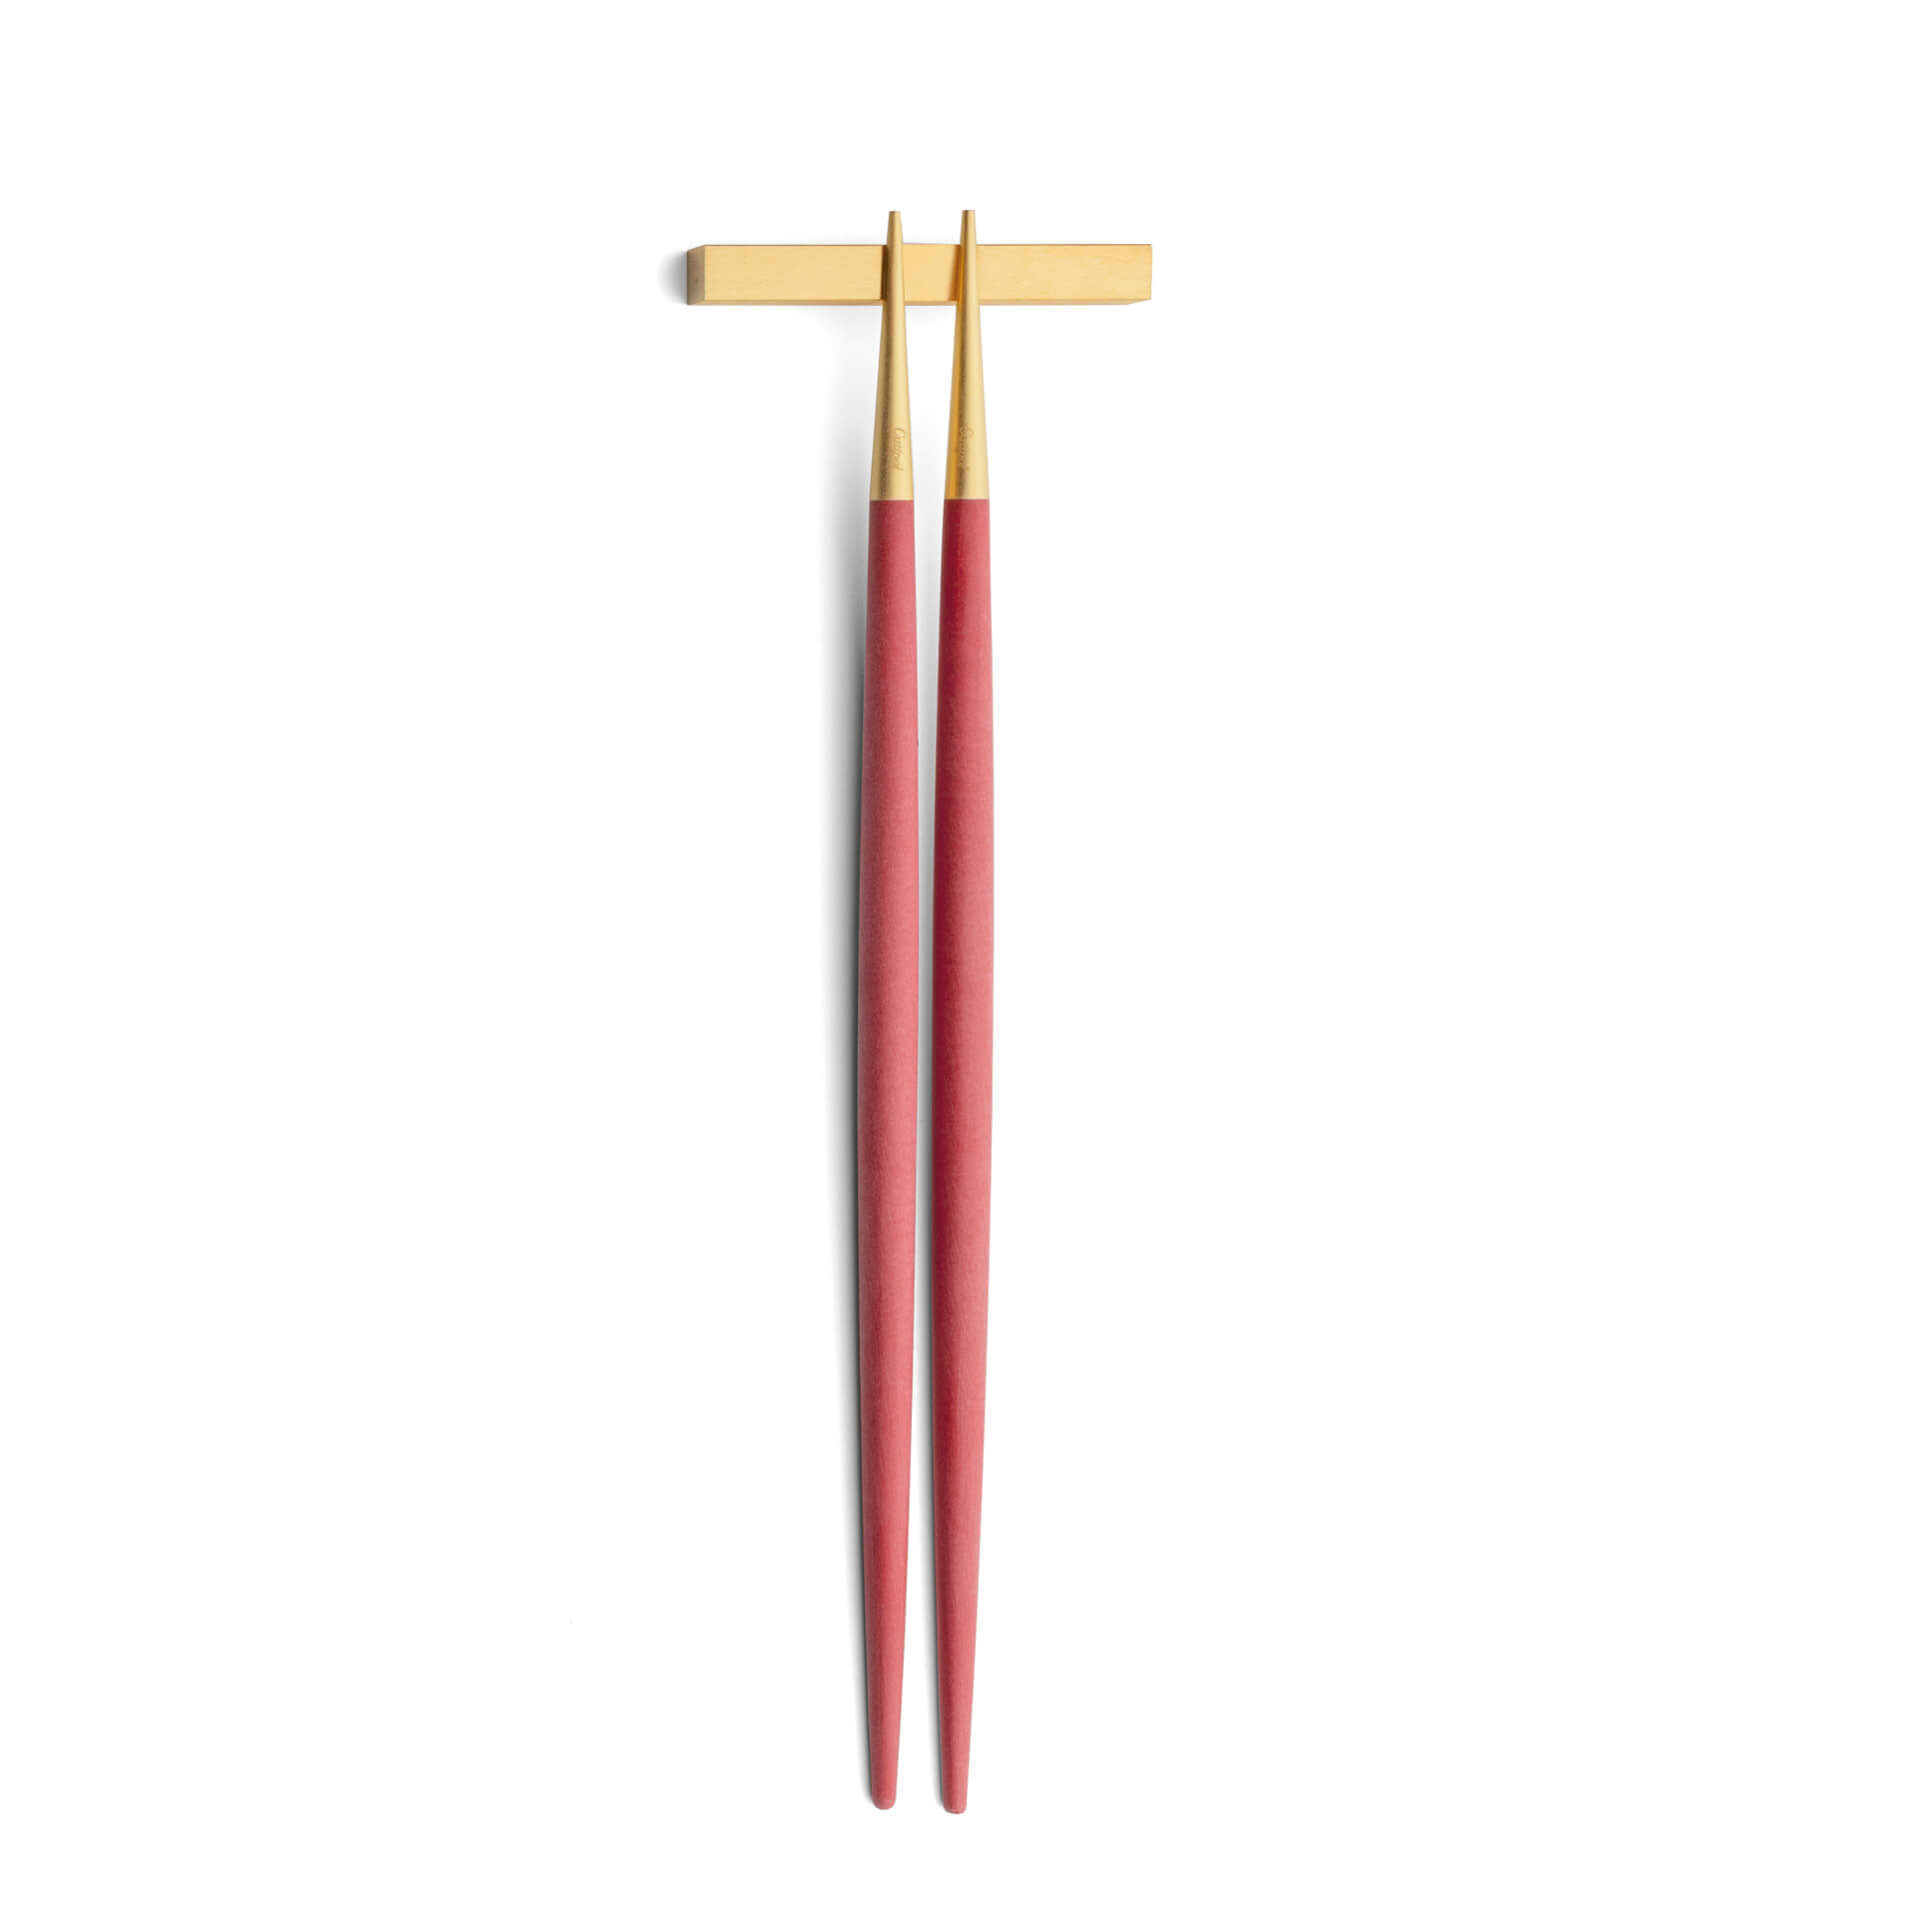 Chopsticks Cutipol Goa Red dourado com suporte